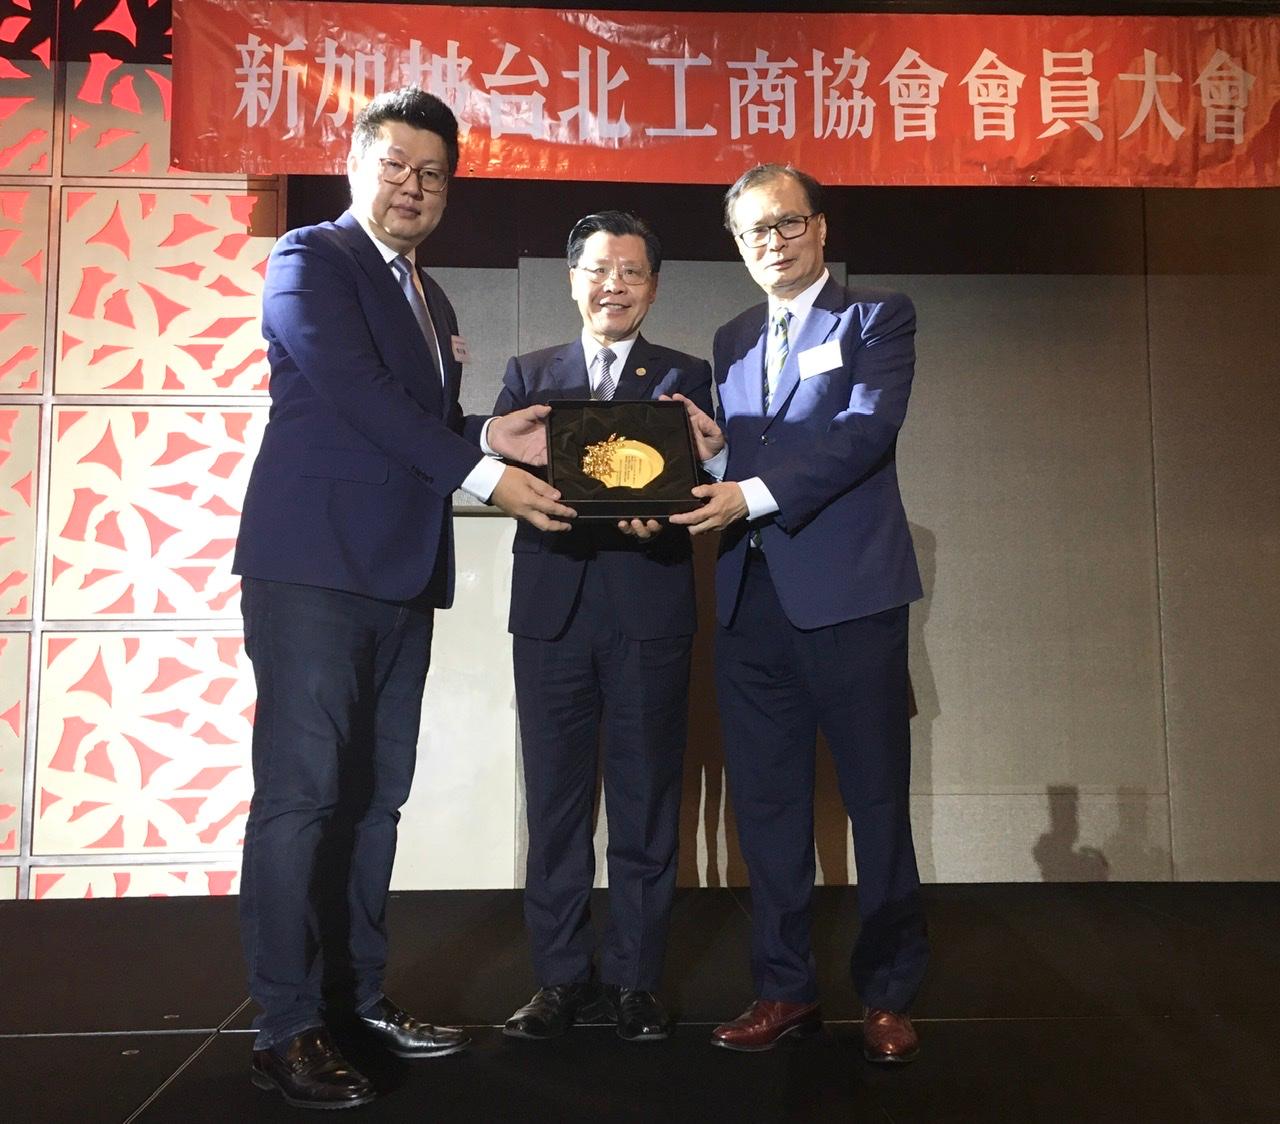 新任會長楊正祺(左)致贈紀念品給名譽會長施至隆(右)，中間為駐新加坡台北代表處代表梁國新。 (109/01/18)